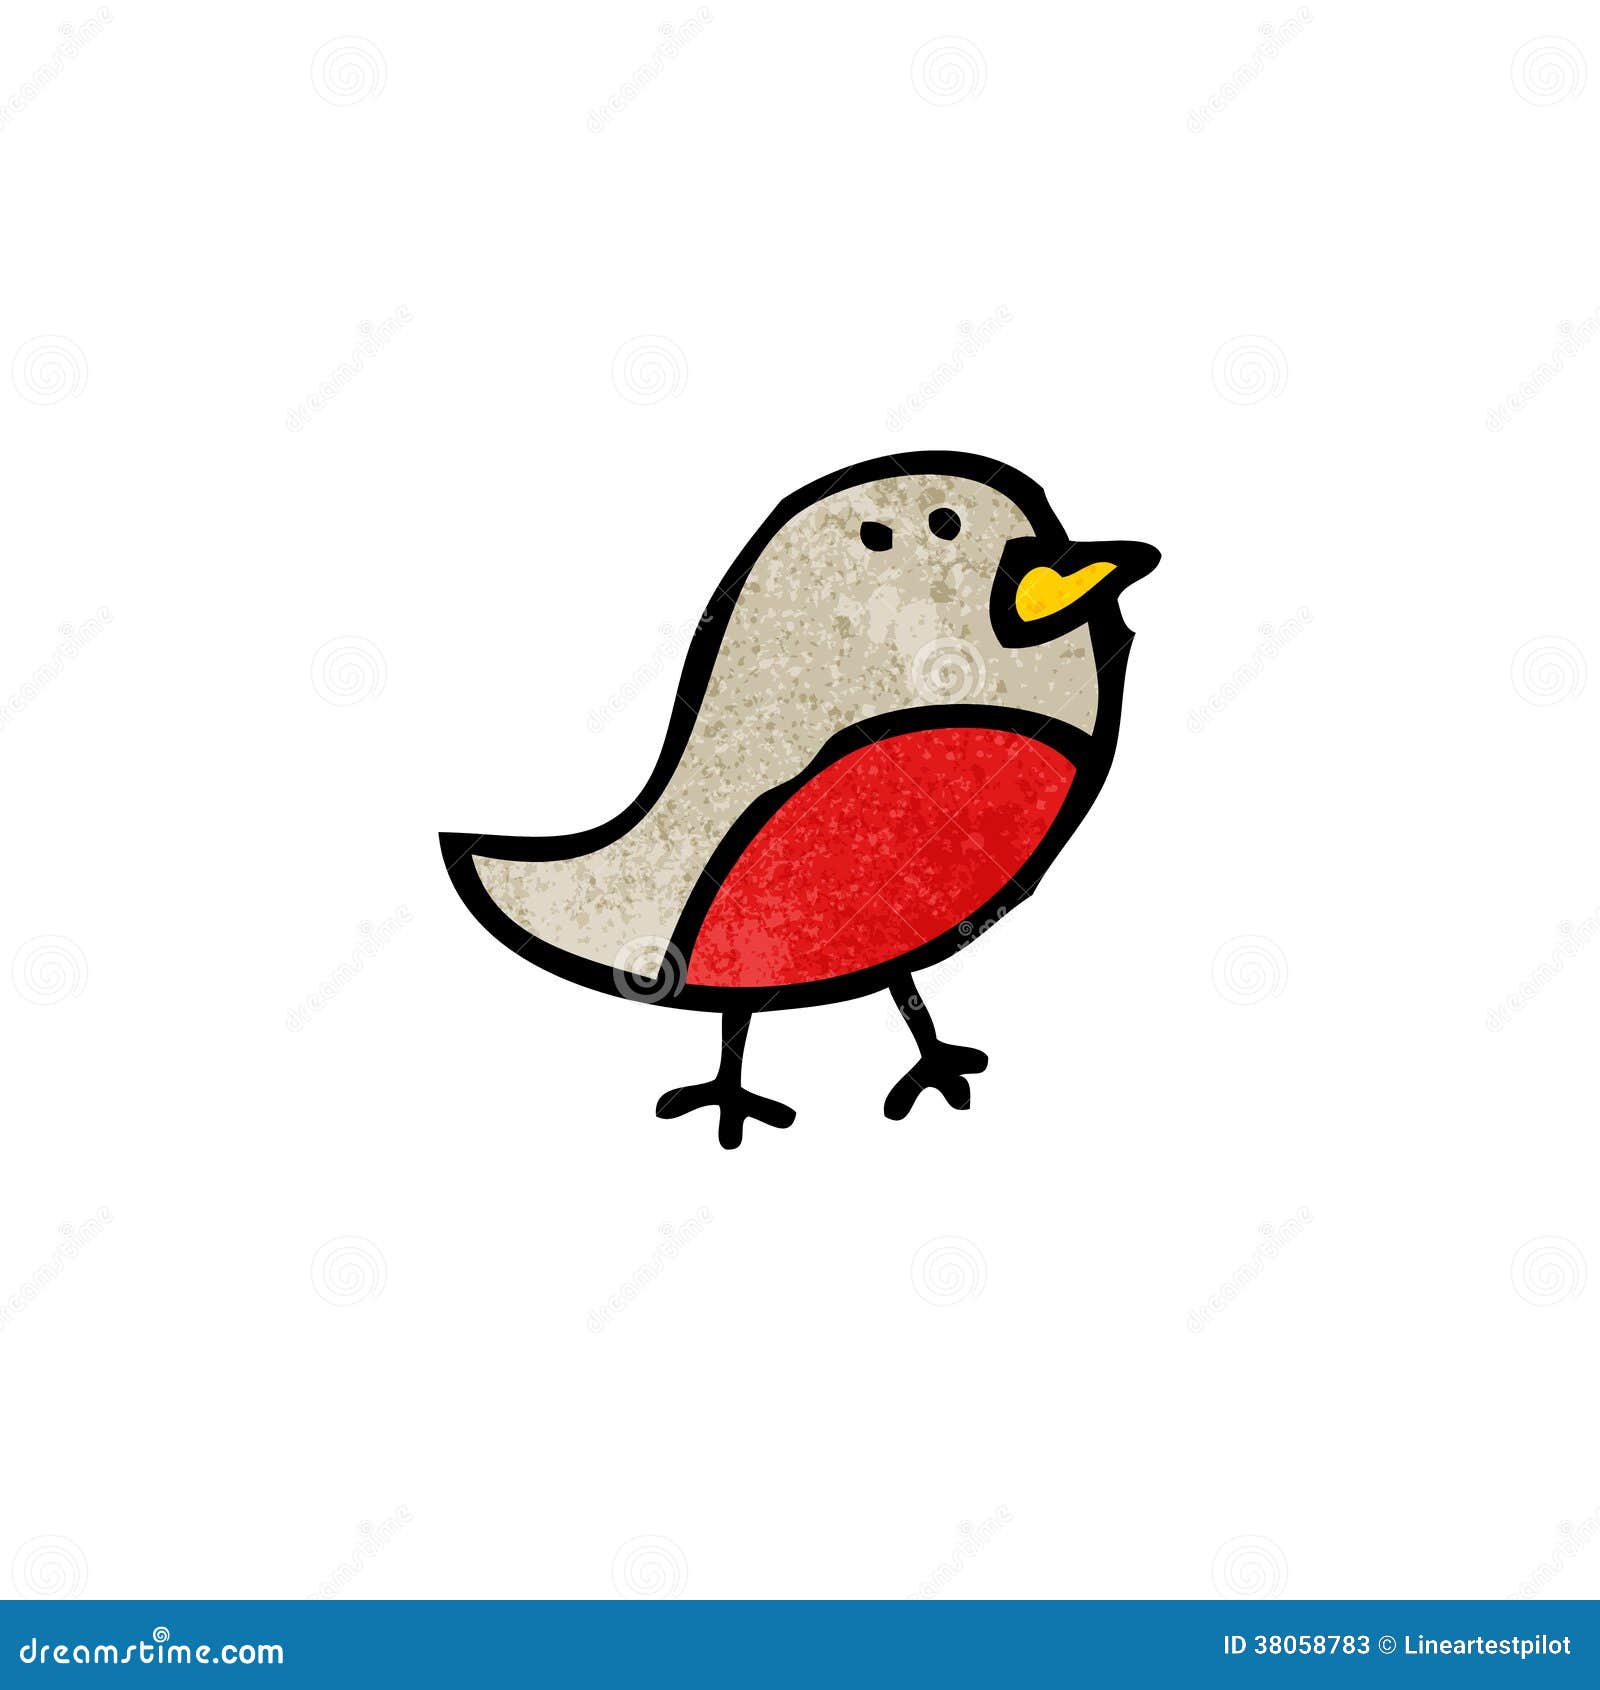 Cartoon robin symbol stock vector. Illustration of crazy - 38058783